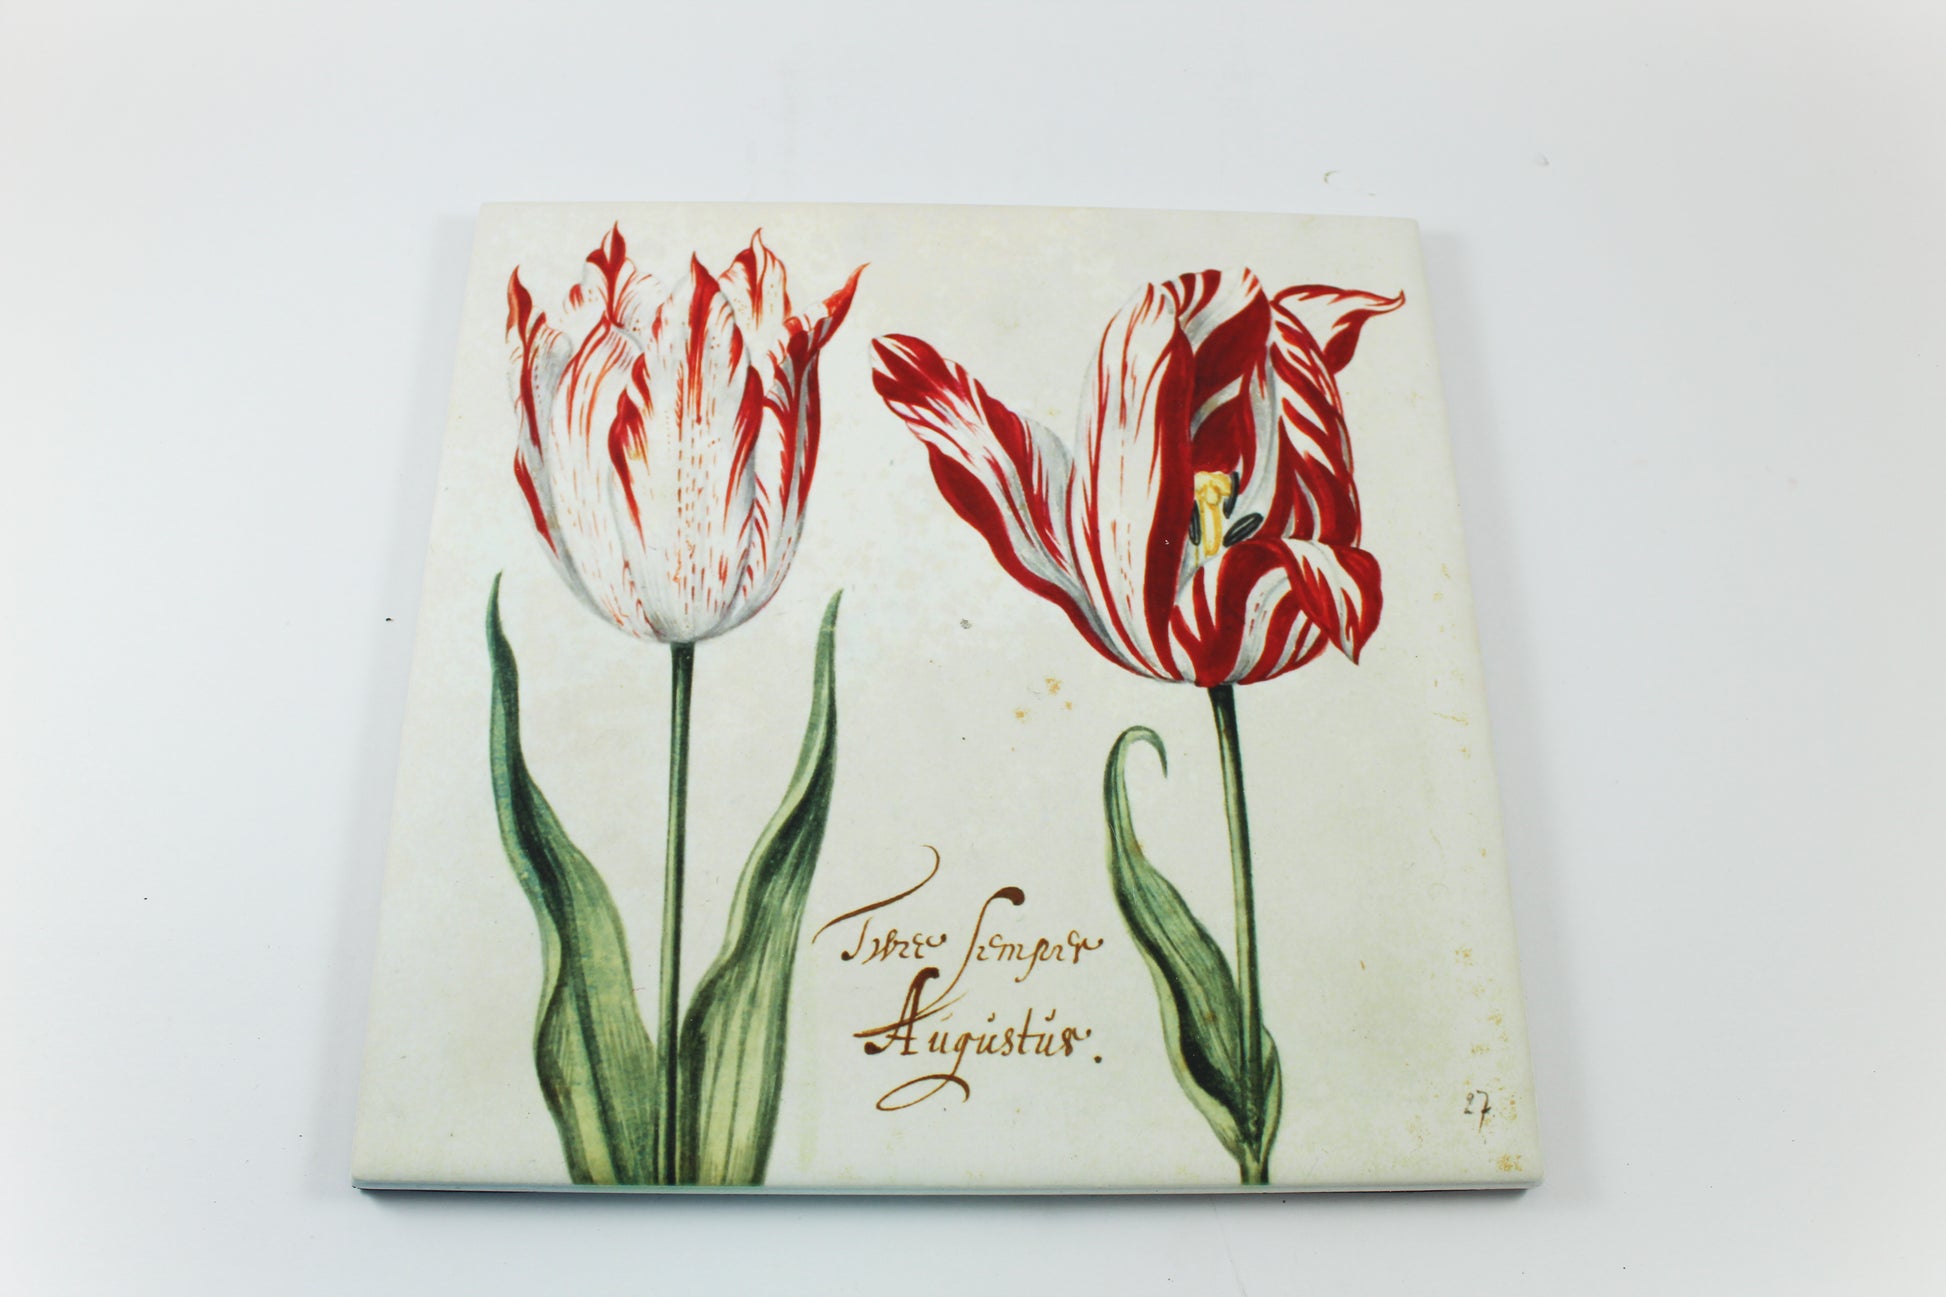 Amsterdam Tulip Museum Semper Augustus Tulip On White Ceramic Hot Plate Trivet Table Mat